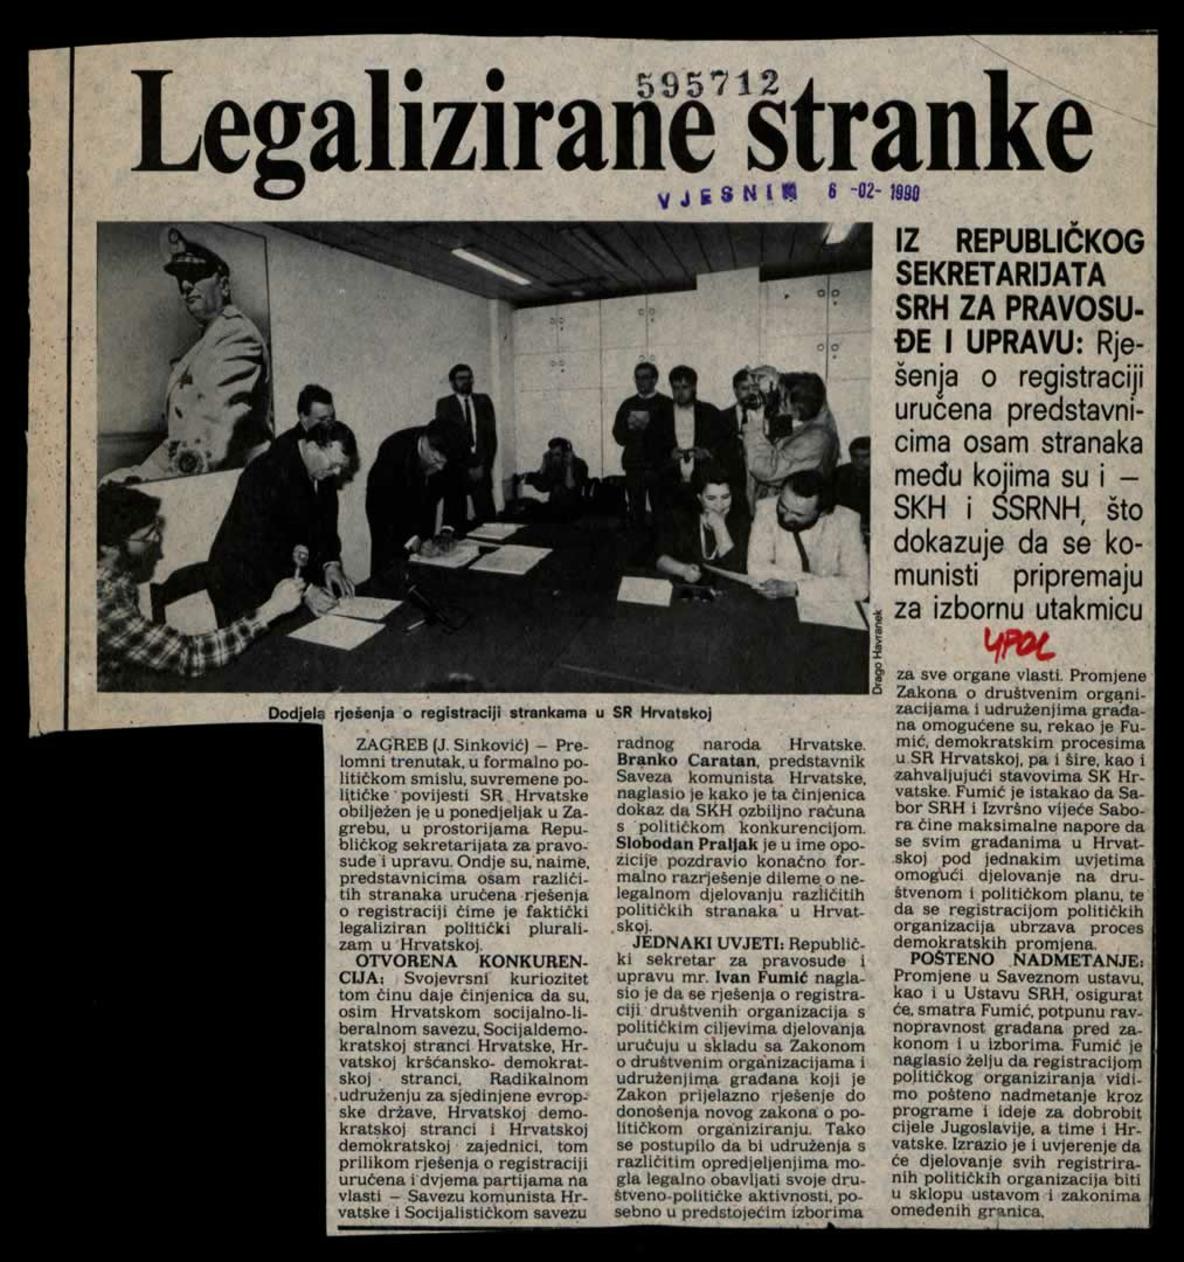 <strong>Dodjela rješenja o registraciji strankama u SR Hrvatskoj,</strong> članak iz <i>Vjesnika</i>, 6. veljače 1990. <br><br>

HR-HDA-2031. Vjesnik. Unutarnja politika, kut. 934
